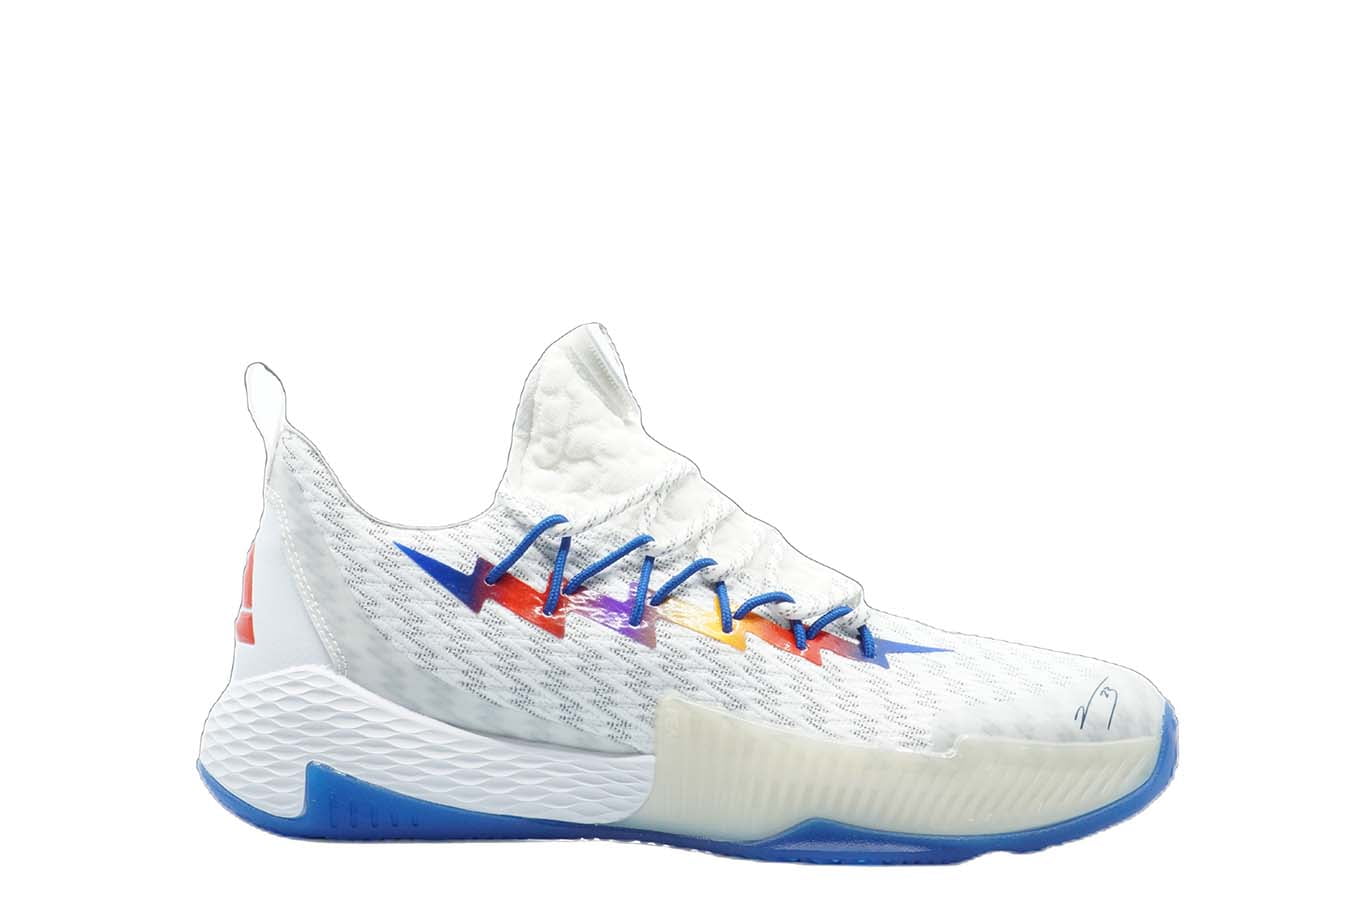 E9366] Mens Peak Crazy 6 Lou Williams Signature White Basketball Shoes -  9.5 - Walmart.com